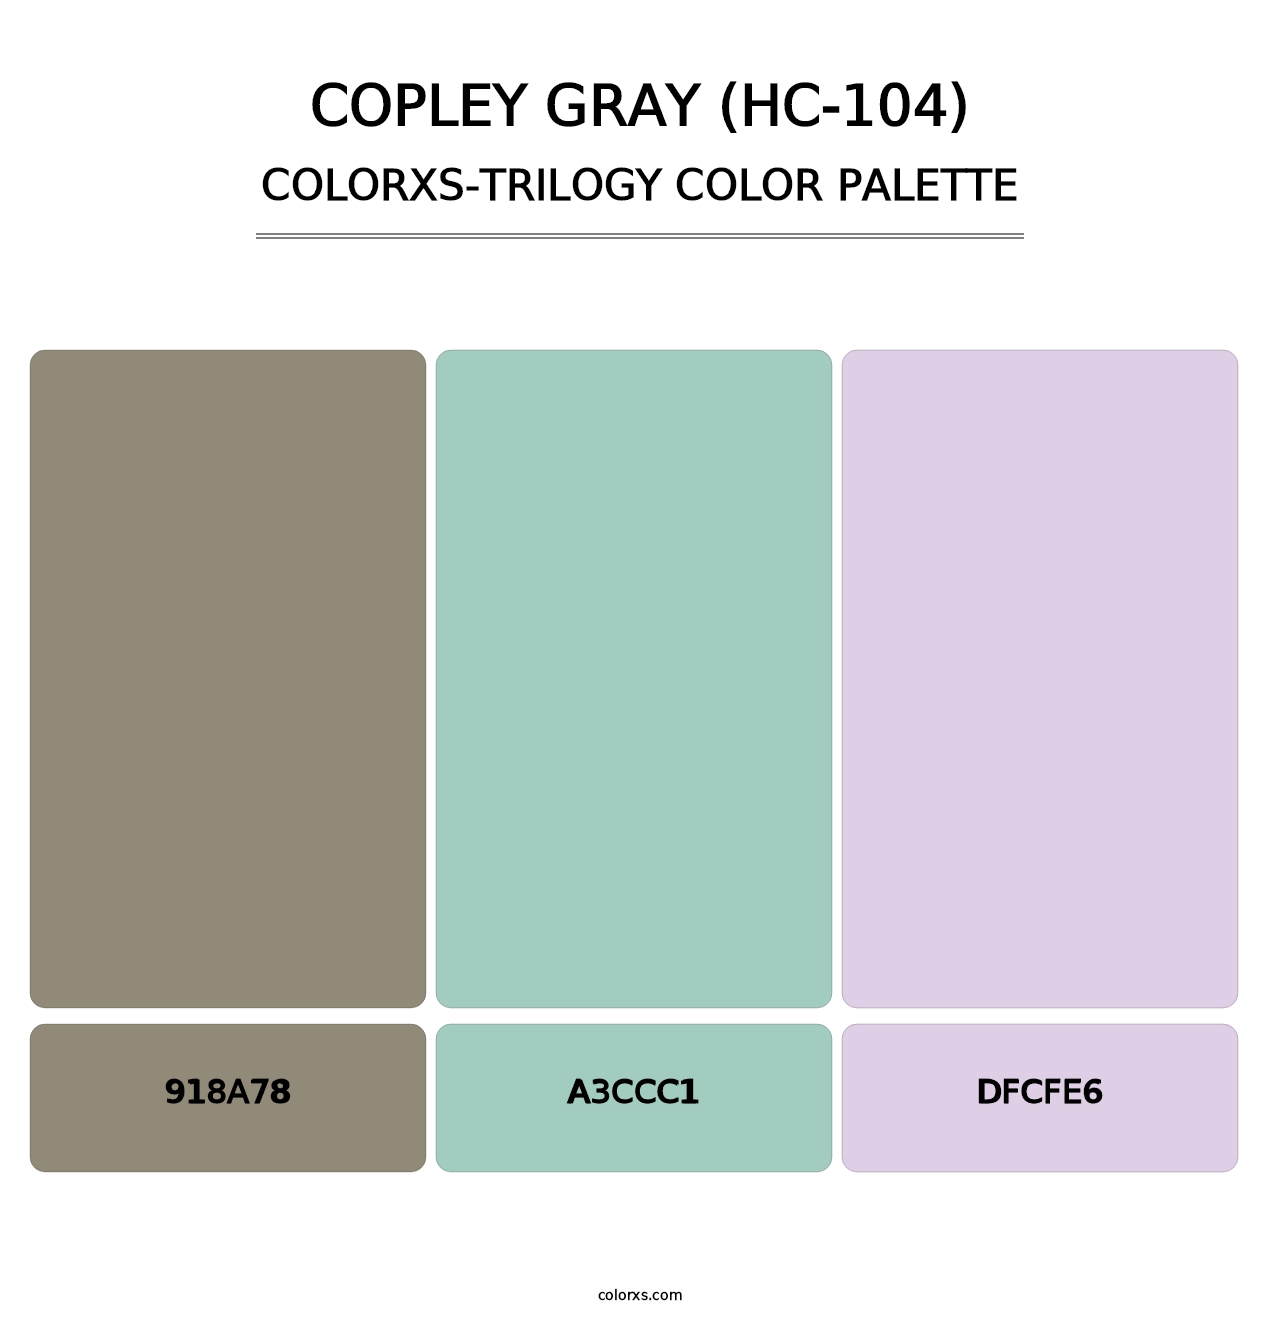 Copley Gray (HC-104) - Colorxs Trilogy Palette